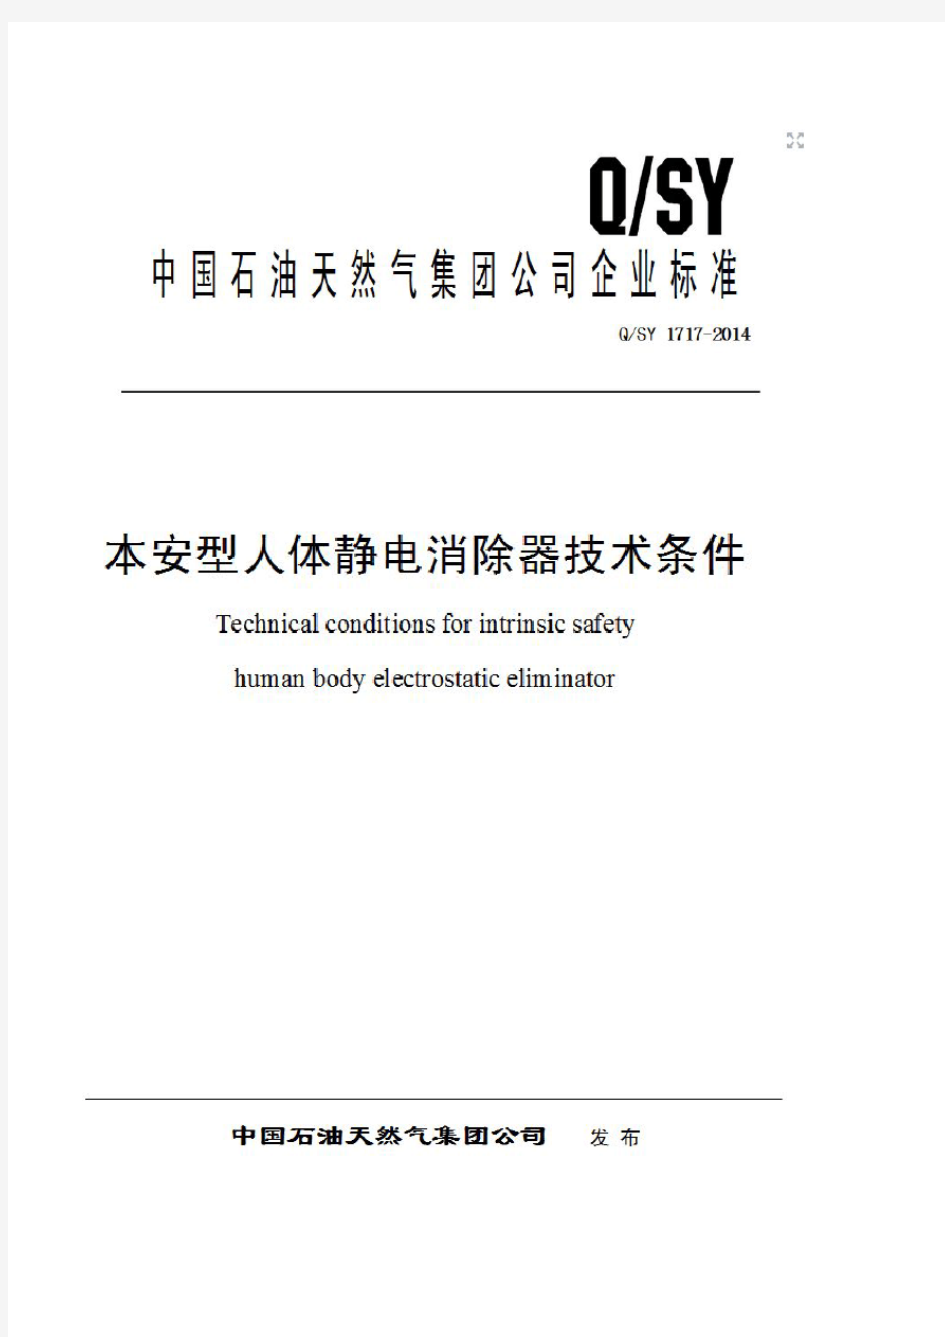 Q SY-1717-2014本安型人体静电消除器技术条件